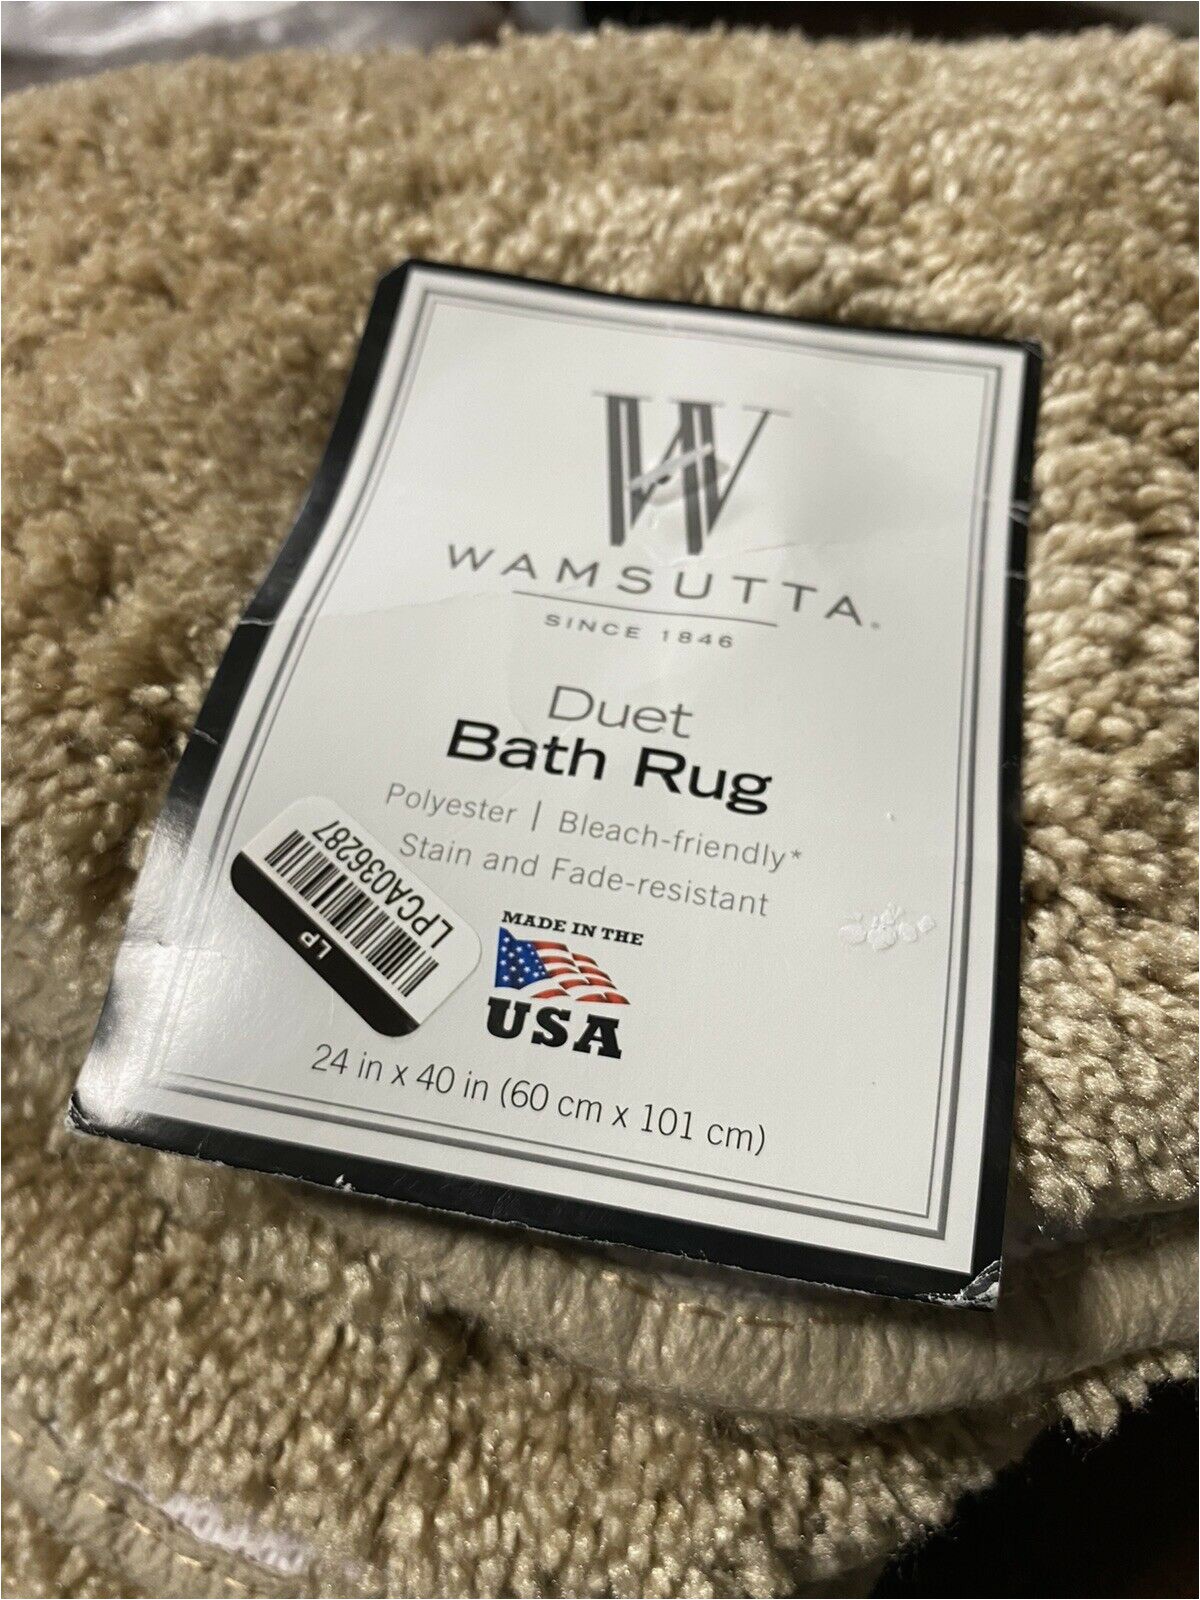 Wamsutta Bath Rug Colors Wamsutta Duet 24 Inch X 40 Inch Bath Rug In Sand